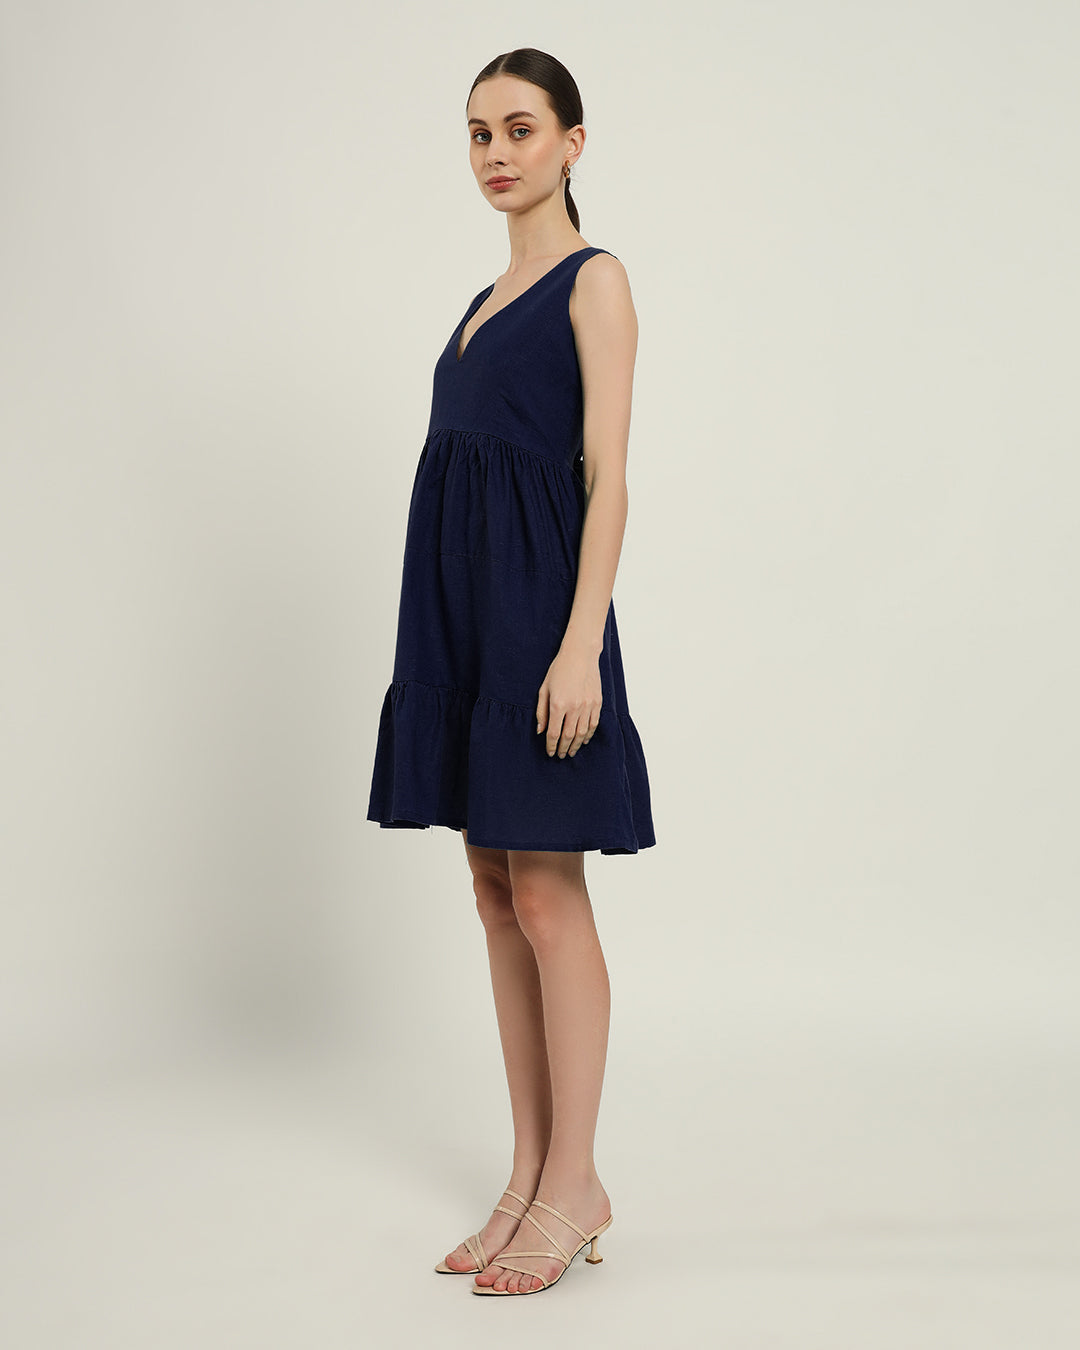 The Minsk Daisy Midnight Blue Linen Dress